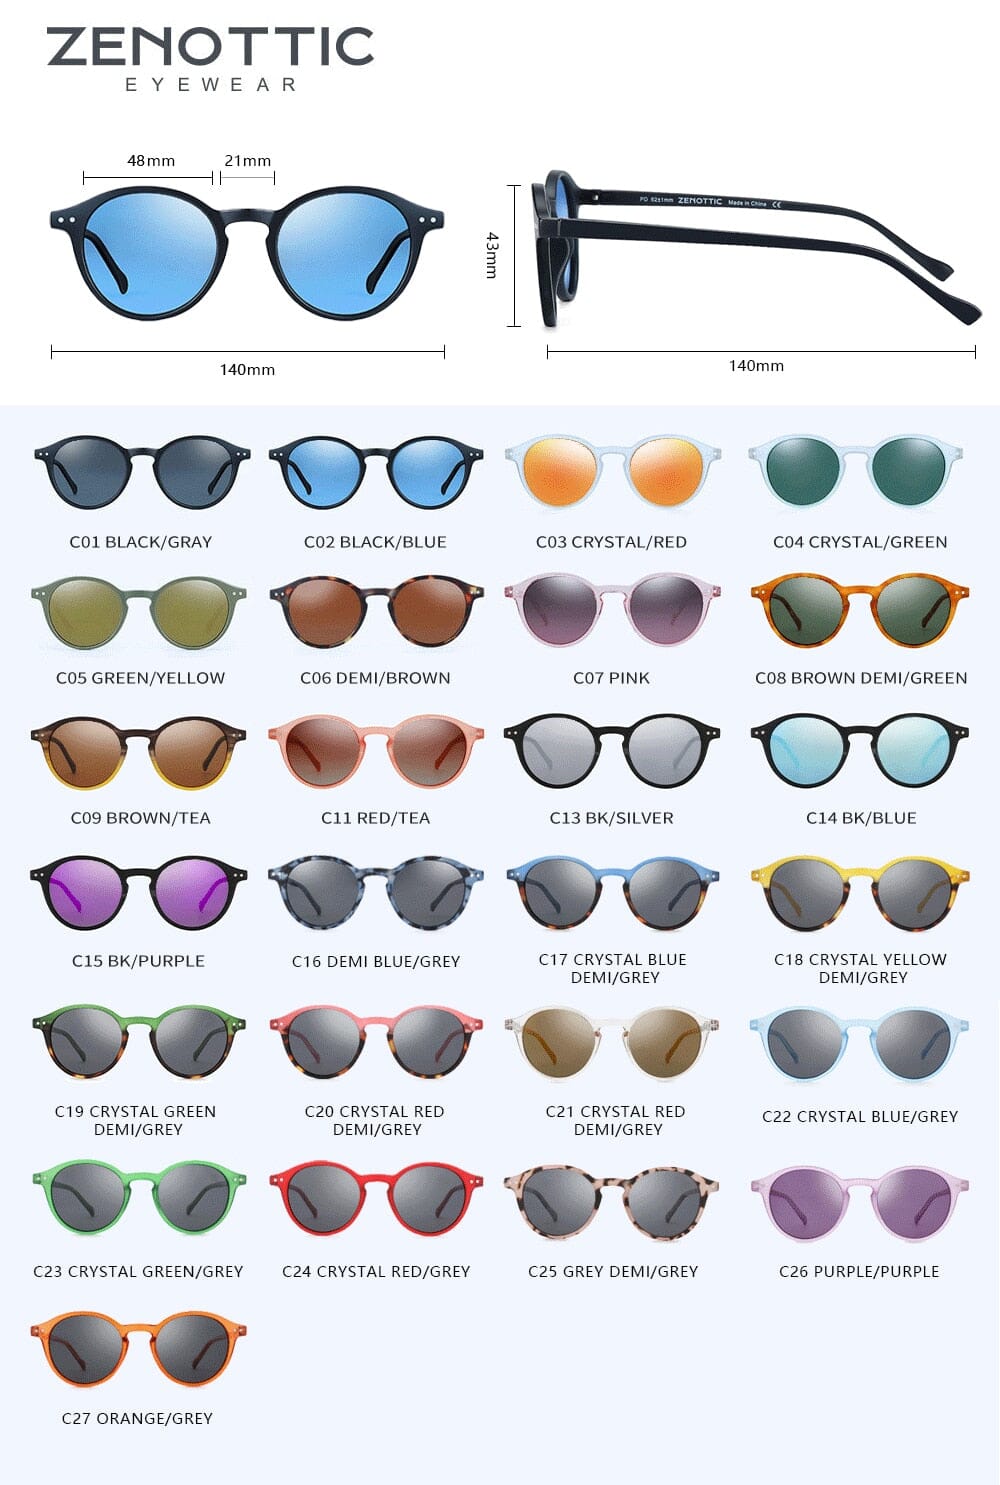 Óculos de Sol Polarizado Ibiza UV400 Zenottic + Brinde Exclusivo 0 karavelas 